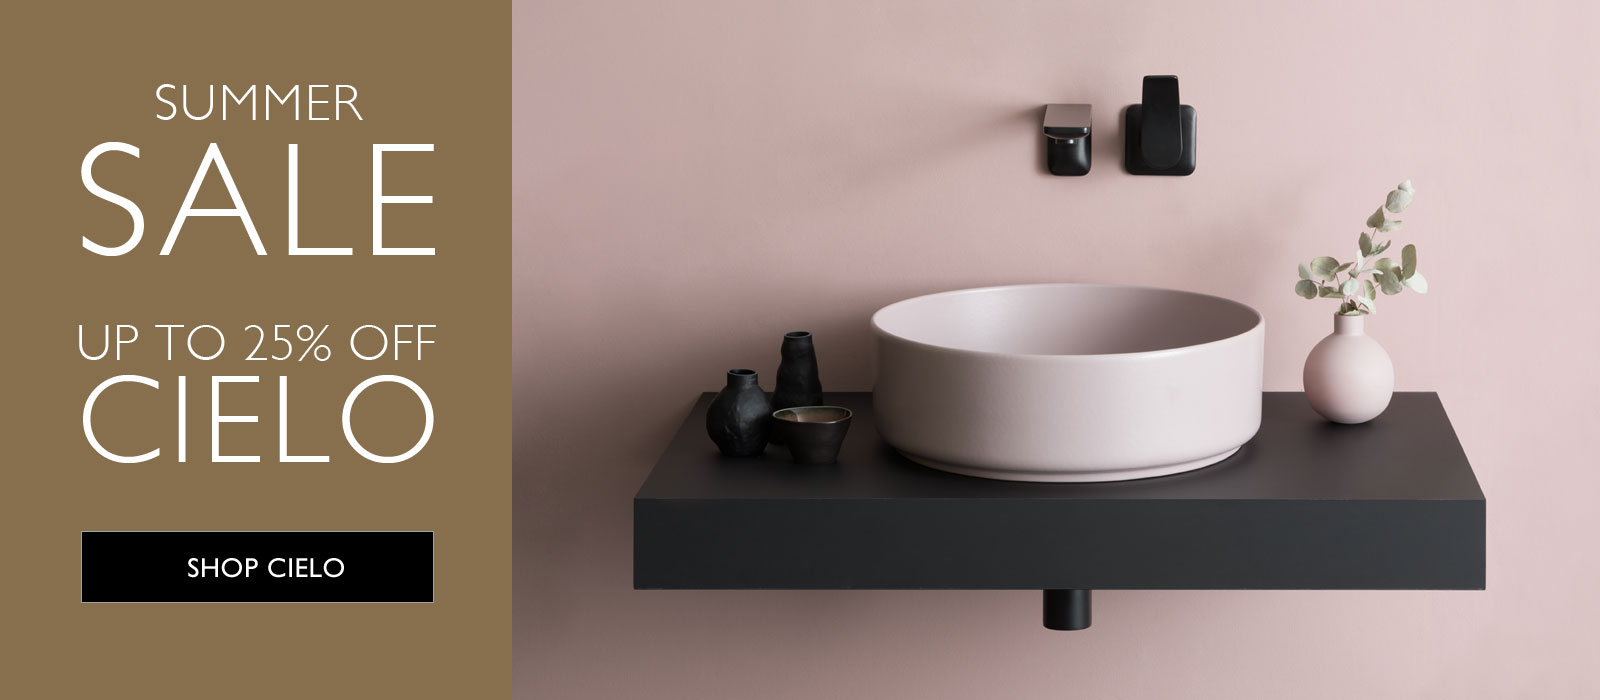 c.p. hart - luxury designer bathrooms, suites and accessories